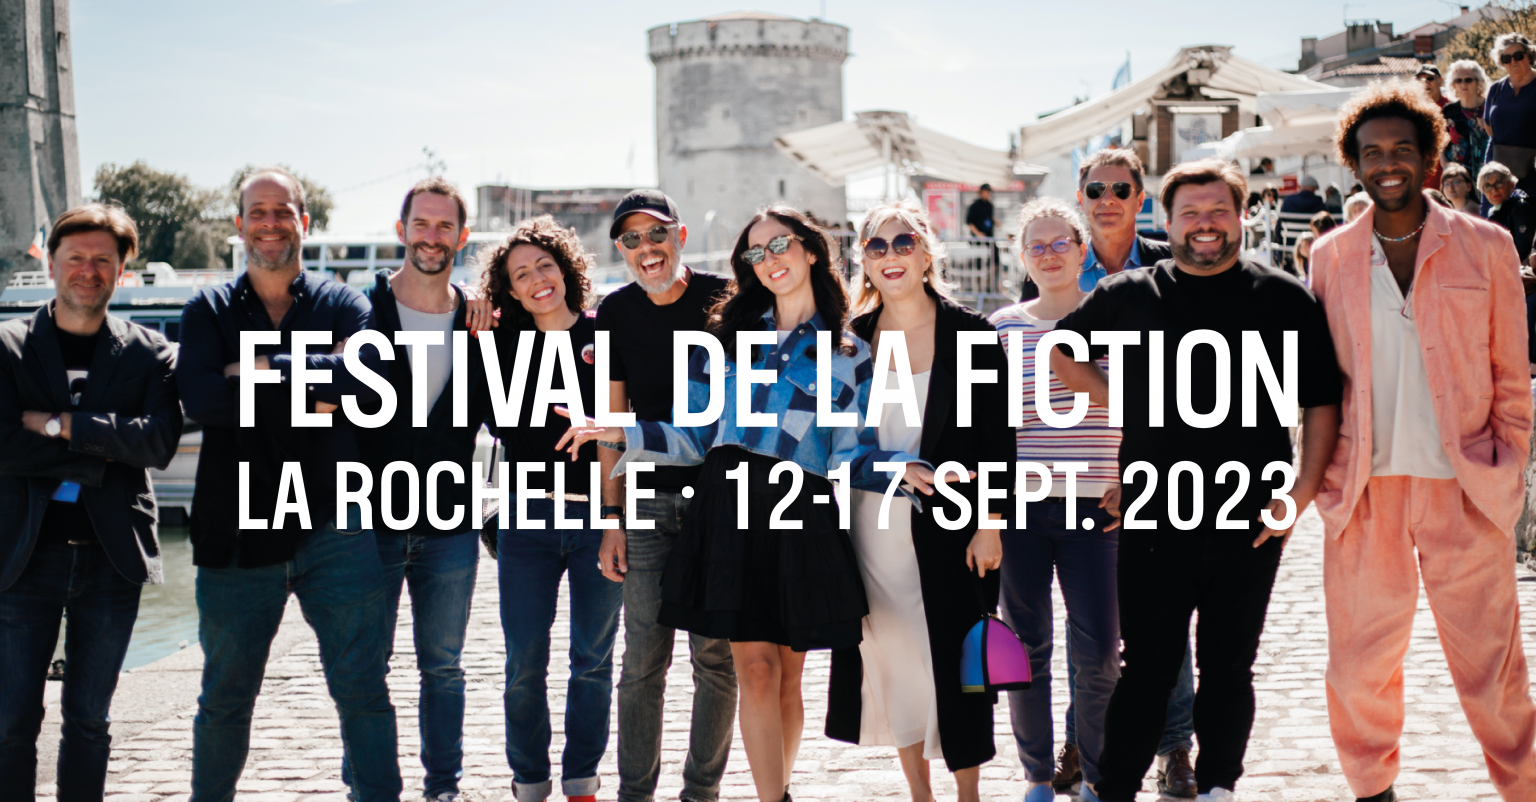 Festival de la Fiction Le Rendezvous de la Fiction / La Rochelle du